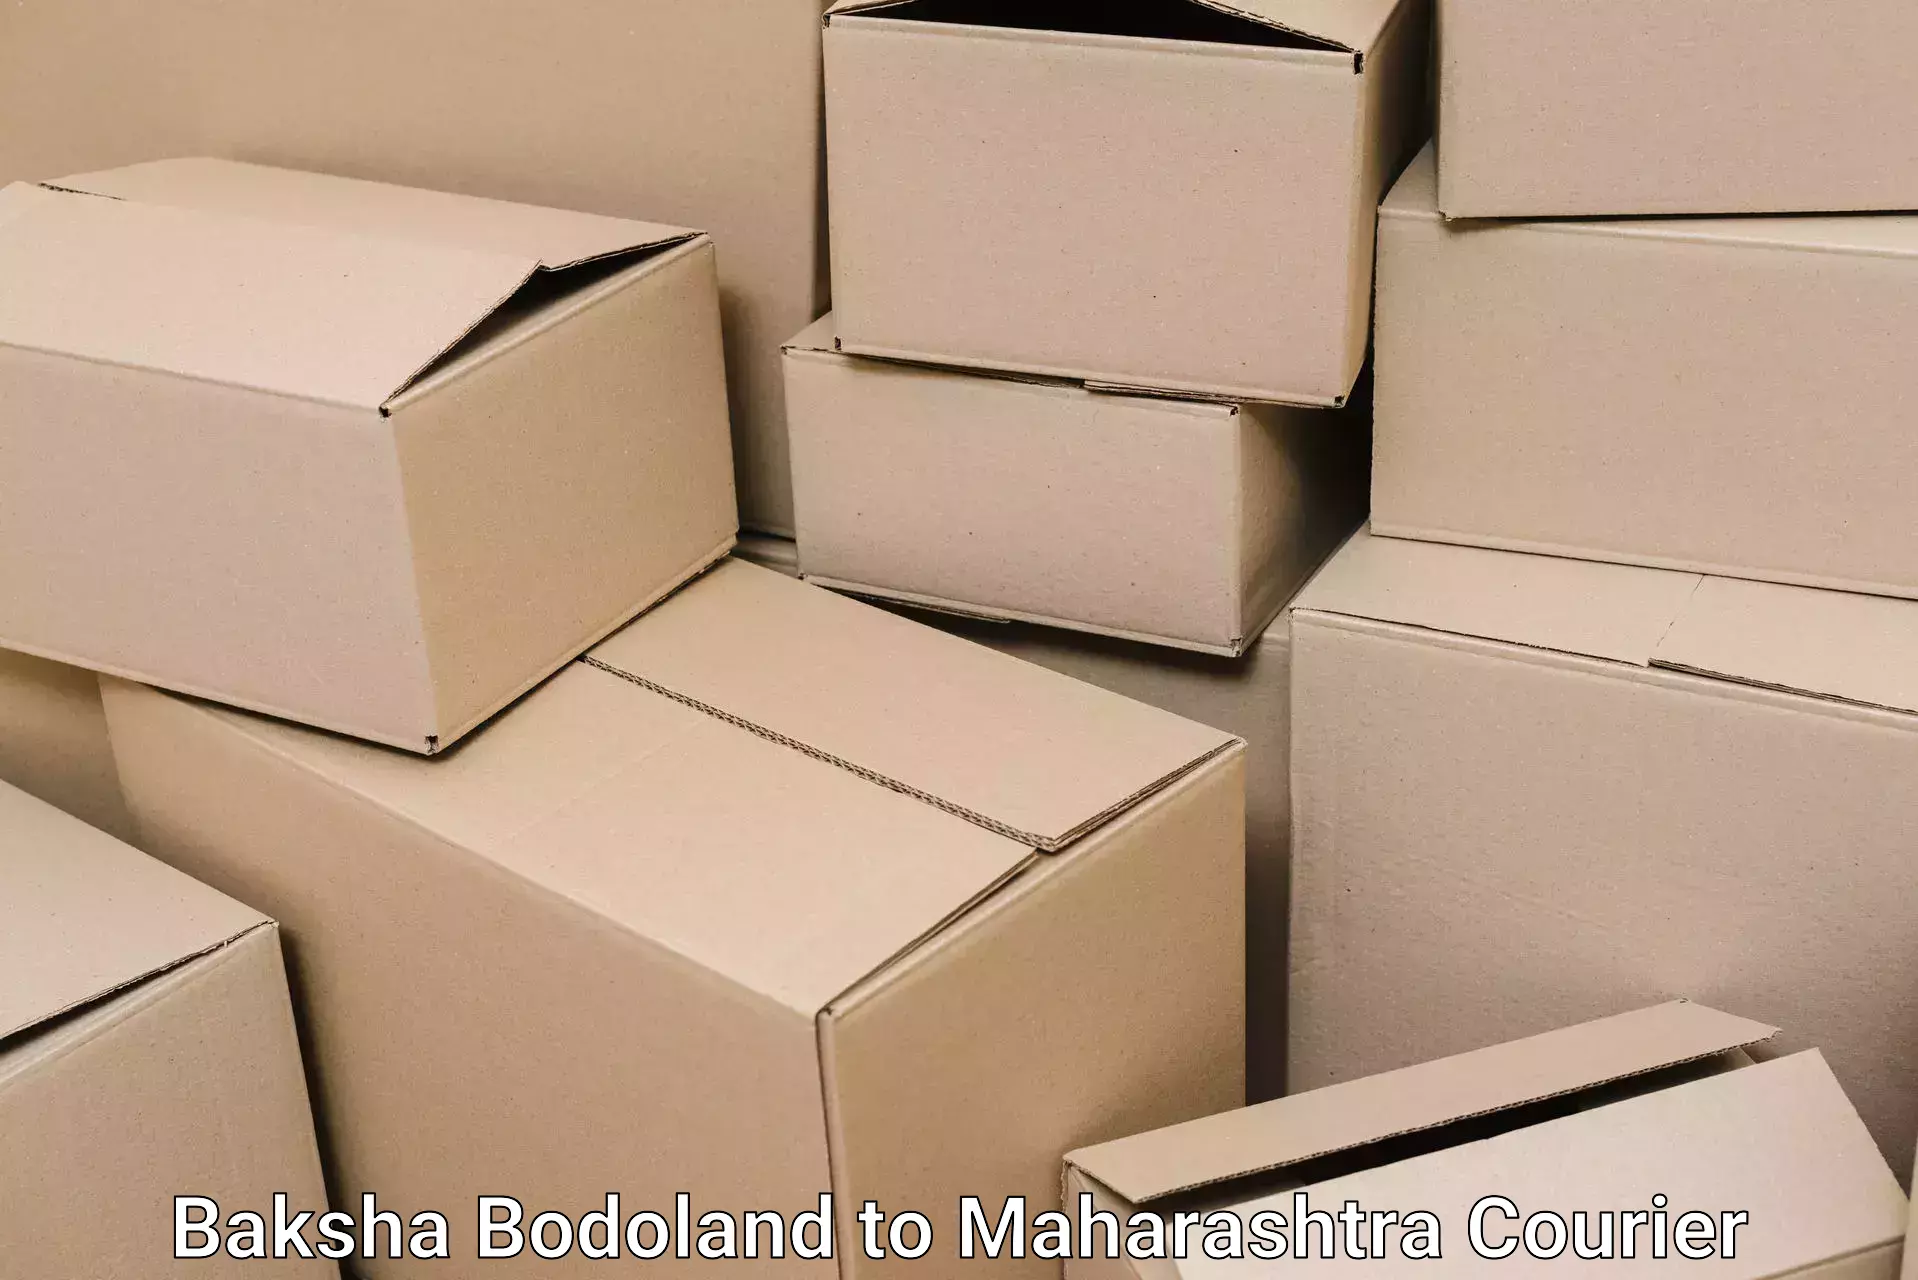 Specialized furniture movers Baksha Bodoland to Bhiwandi